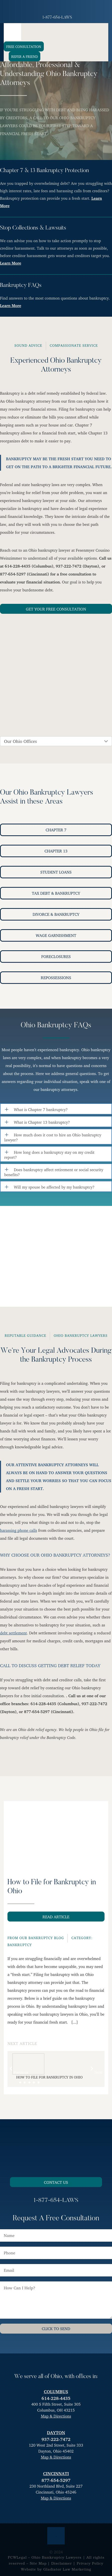 Fesenmyer Law Offices, LLC - Cincinnati OH Lawyers